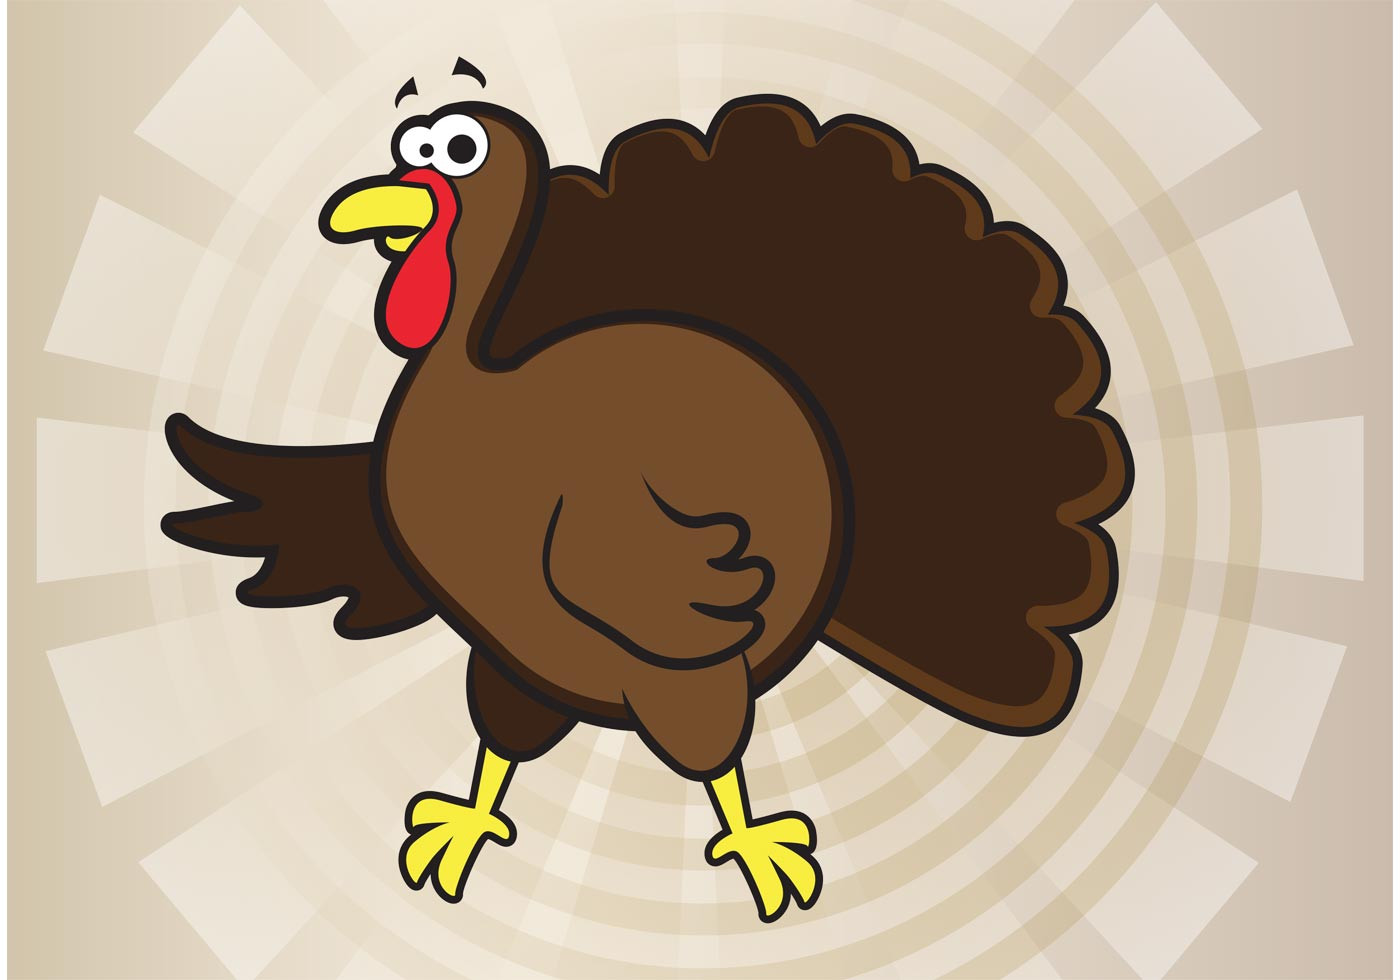 Thanksgiving Turkey Vector
 Turkey Cartoon Vector Download Free Vector Art Stock